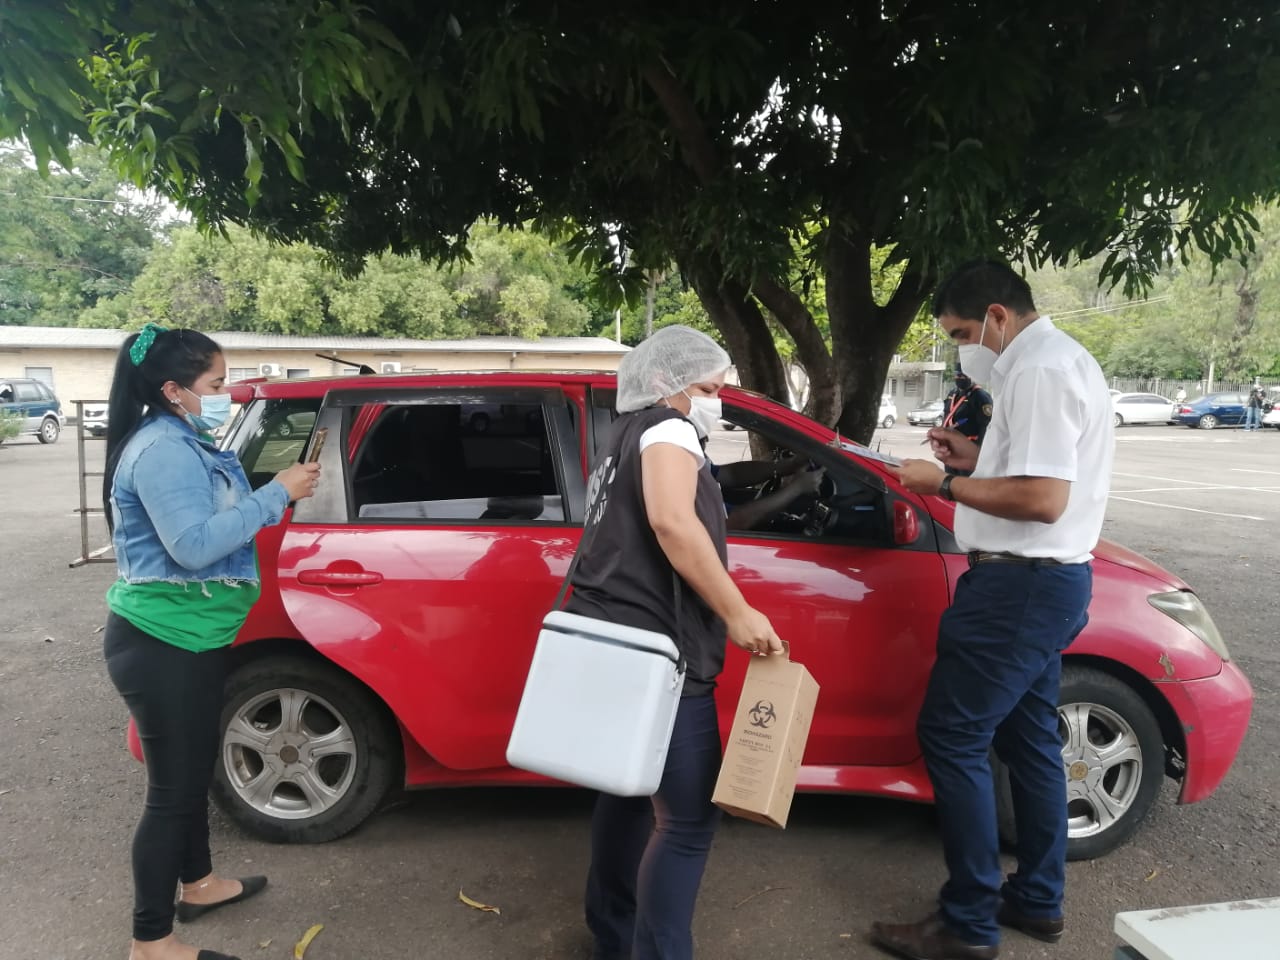 Nueva jornada de vacunación contra el Covid-19 en el campus de la UNA. Foto: Wilma Gaona, periodista de Unicanal.